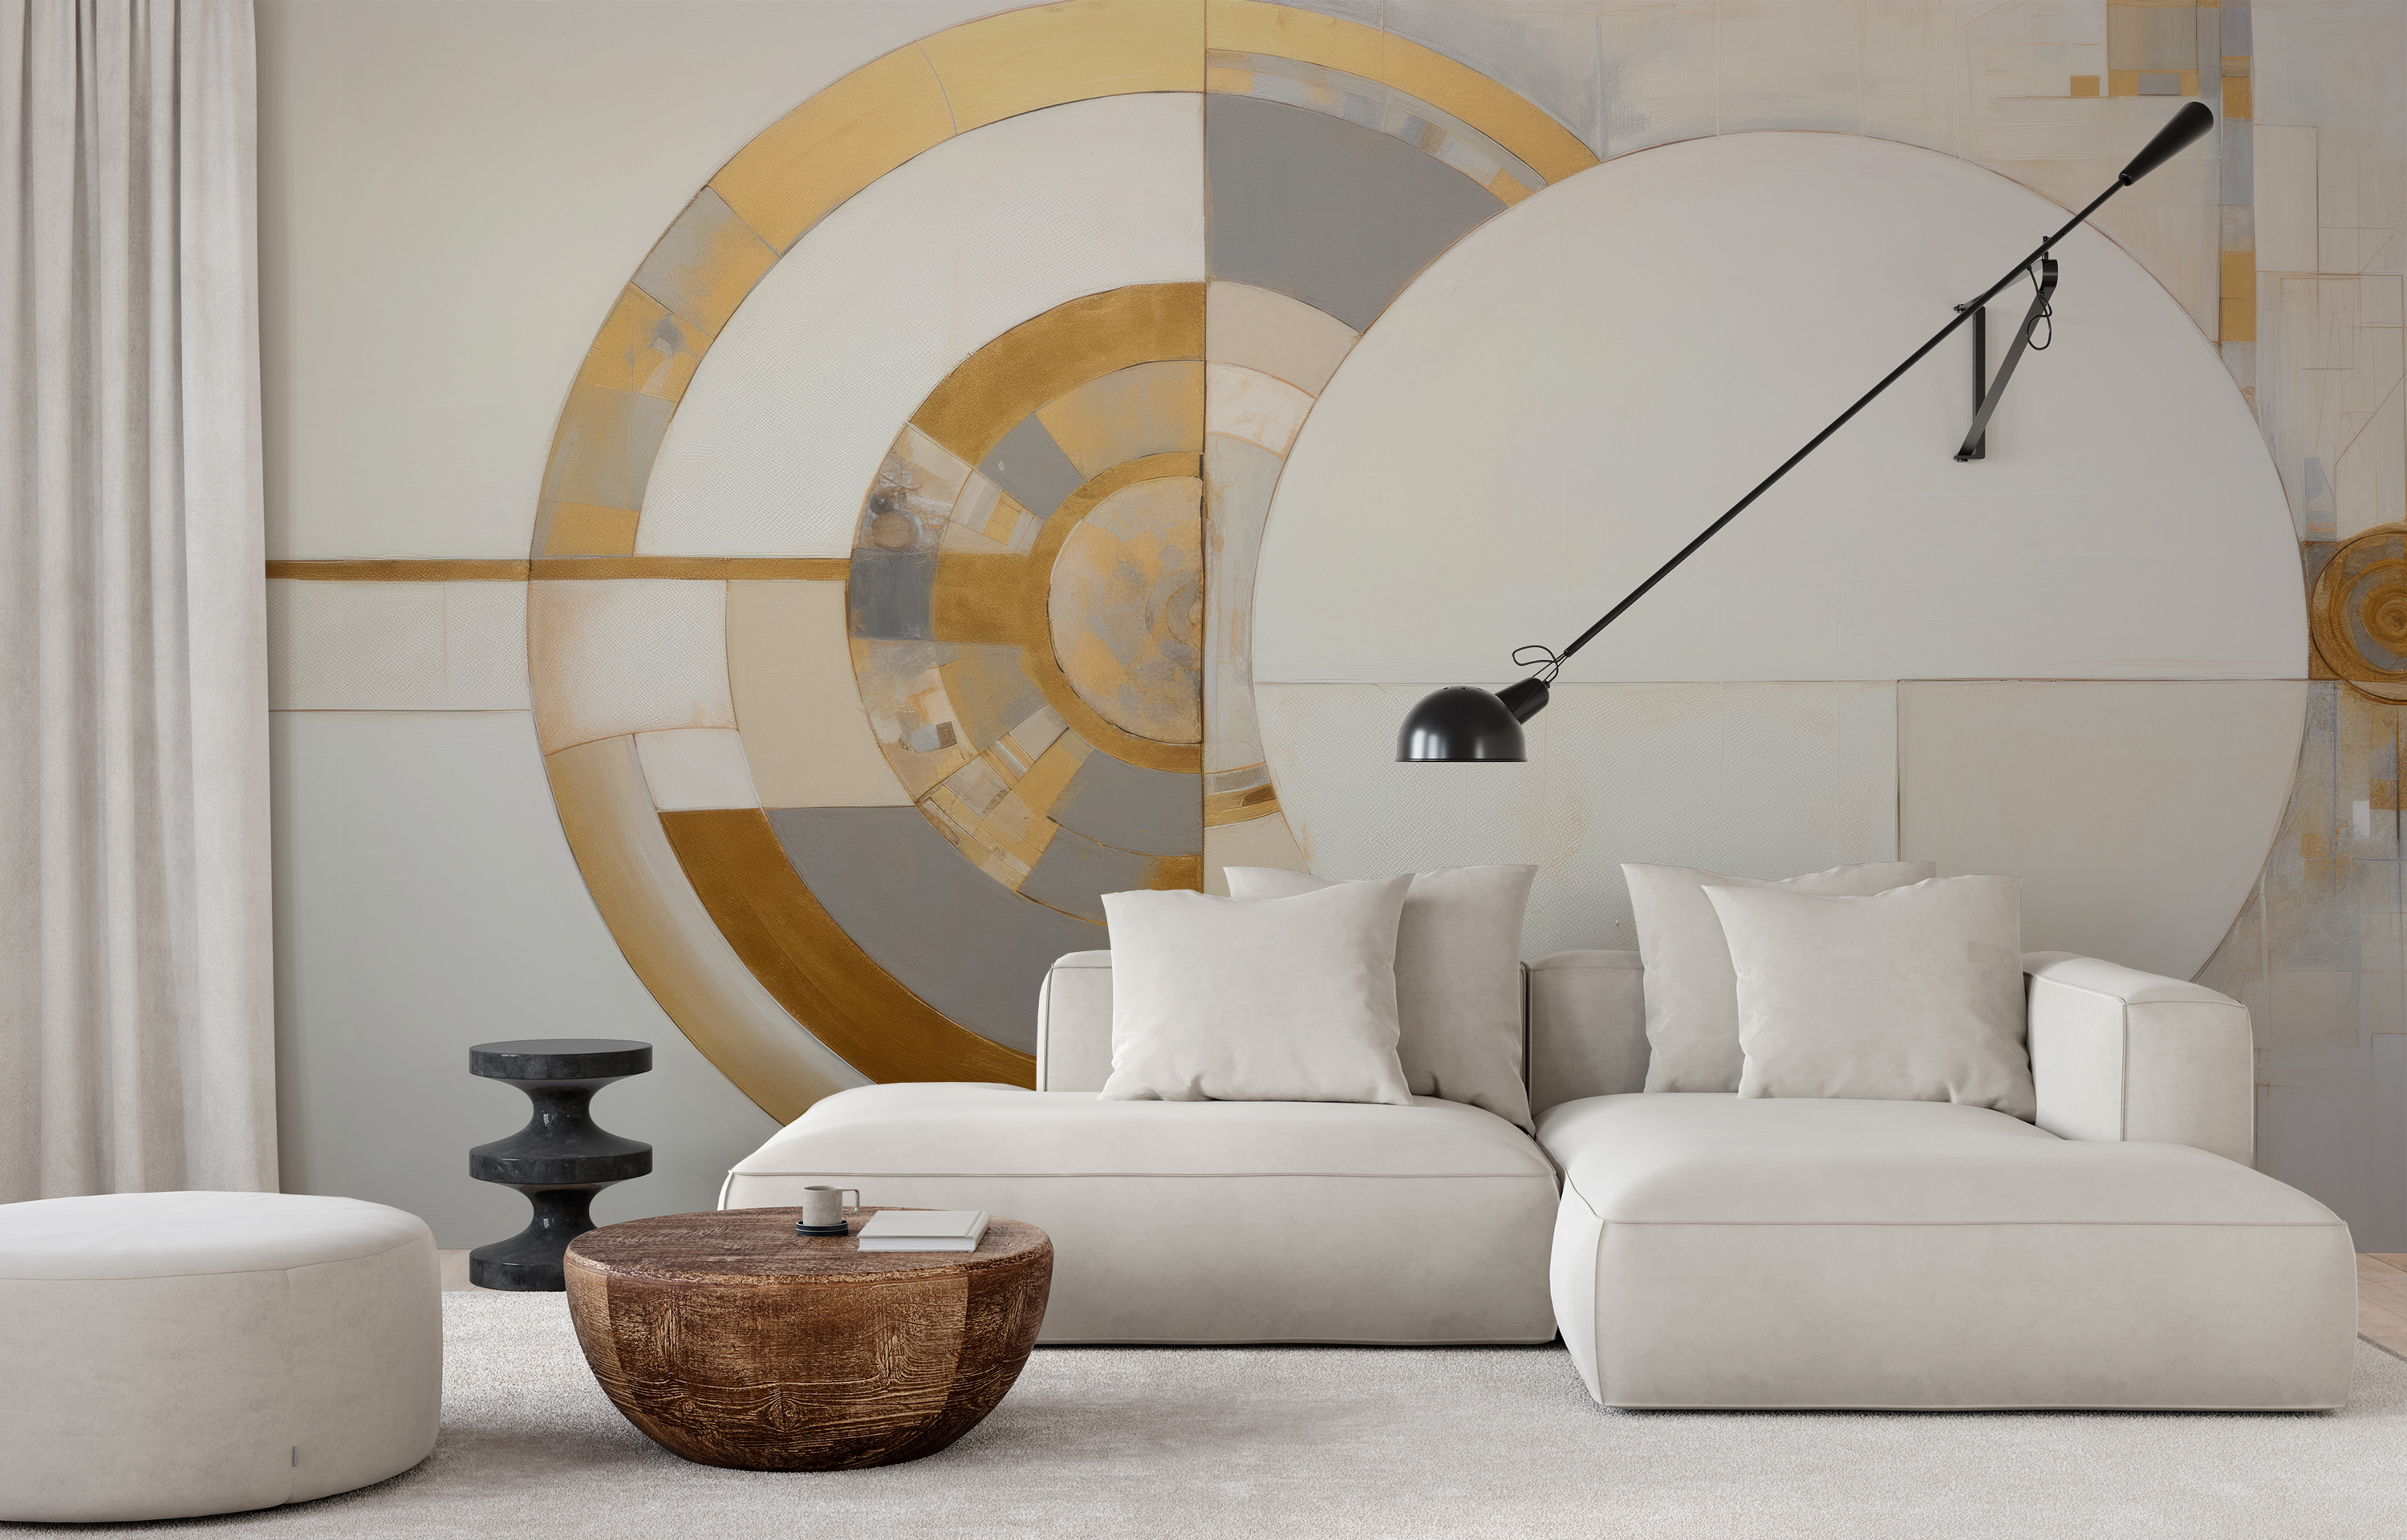 Diese Tapete zeigt ein abstraktes geometrisches Muster mit auffälliger Symmetrie um eine goldene Achse. Das Muster kombiniert Kreise und Bögen in Weiß- und Goldtönen mit dezenten Grautönen und schafft so ein Gefühl von Ausgewogenheit und luxuriöser Raffinesse.